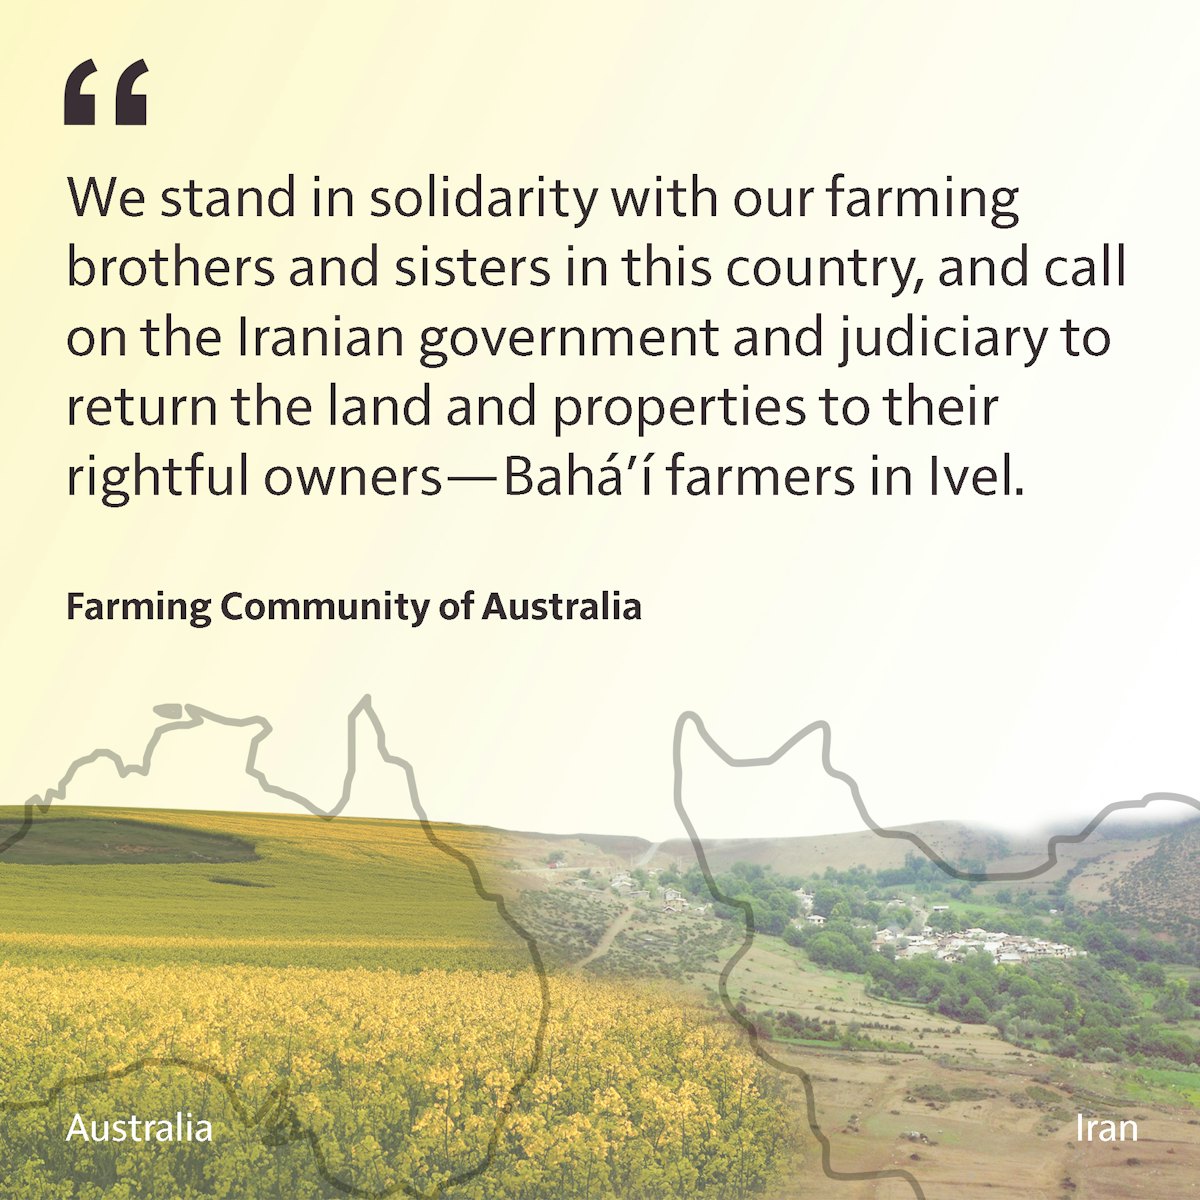 Un message vidéo (en anglais) diffusé au nom des membres de la communauté agricole australienne décrit le rôle d’un gouvernement solidaire dans l’aide à ses communautés agricoles, ce qui contraste fortement avec le traitement sévère infligé par l’Iran à l’égard à la « pacifique communauté bahá’íe » du pays.